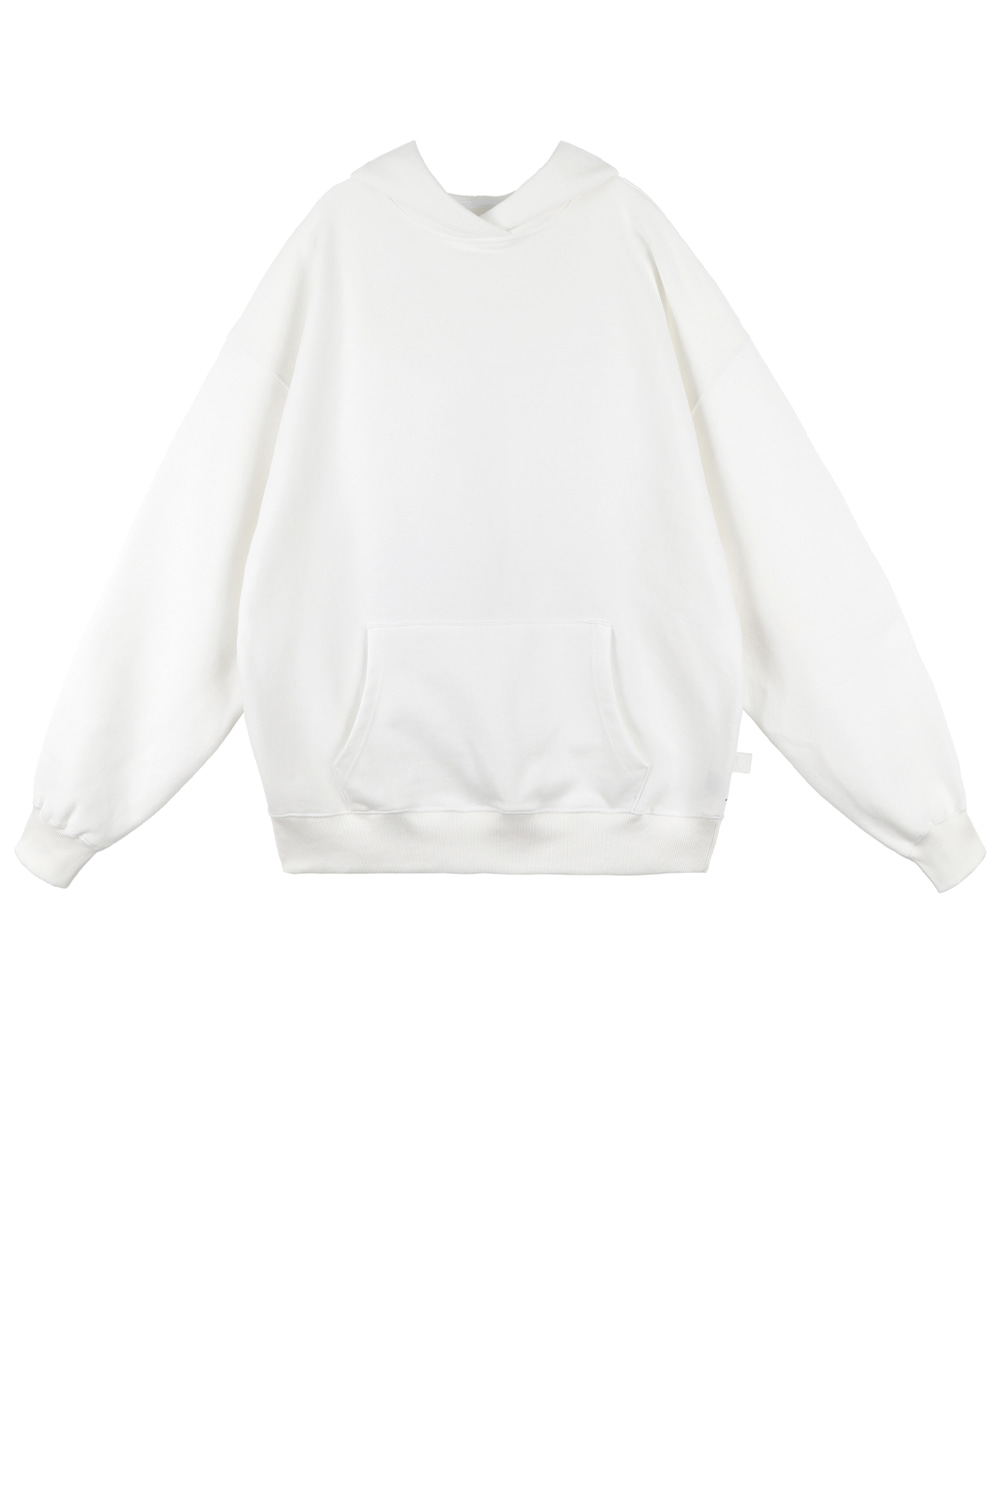 Overlap hoodie sweatshirt_Ivory